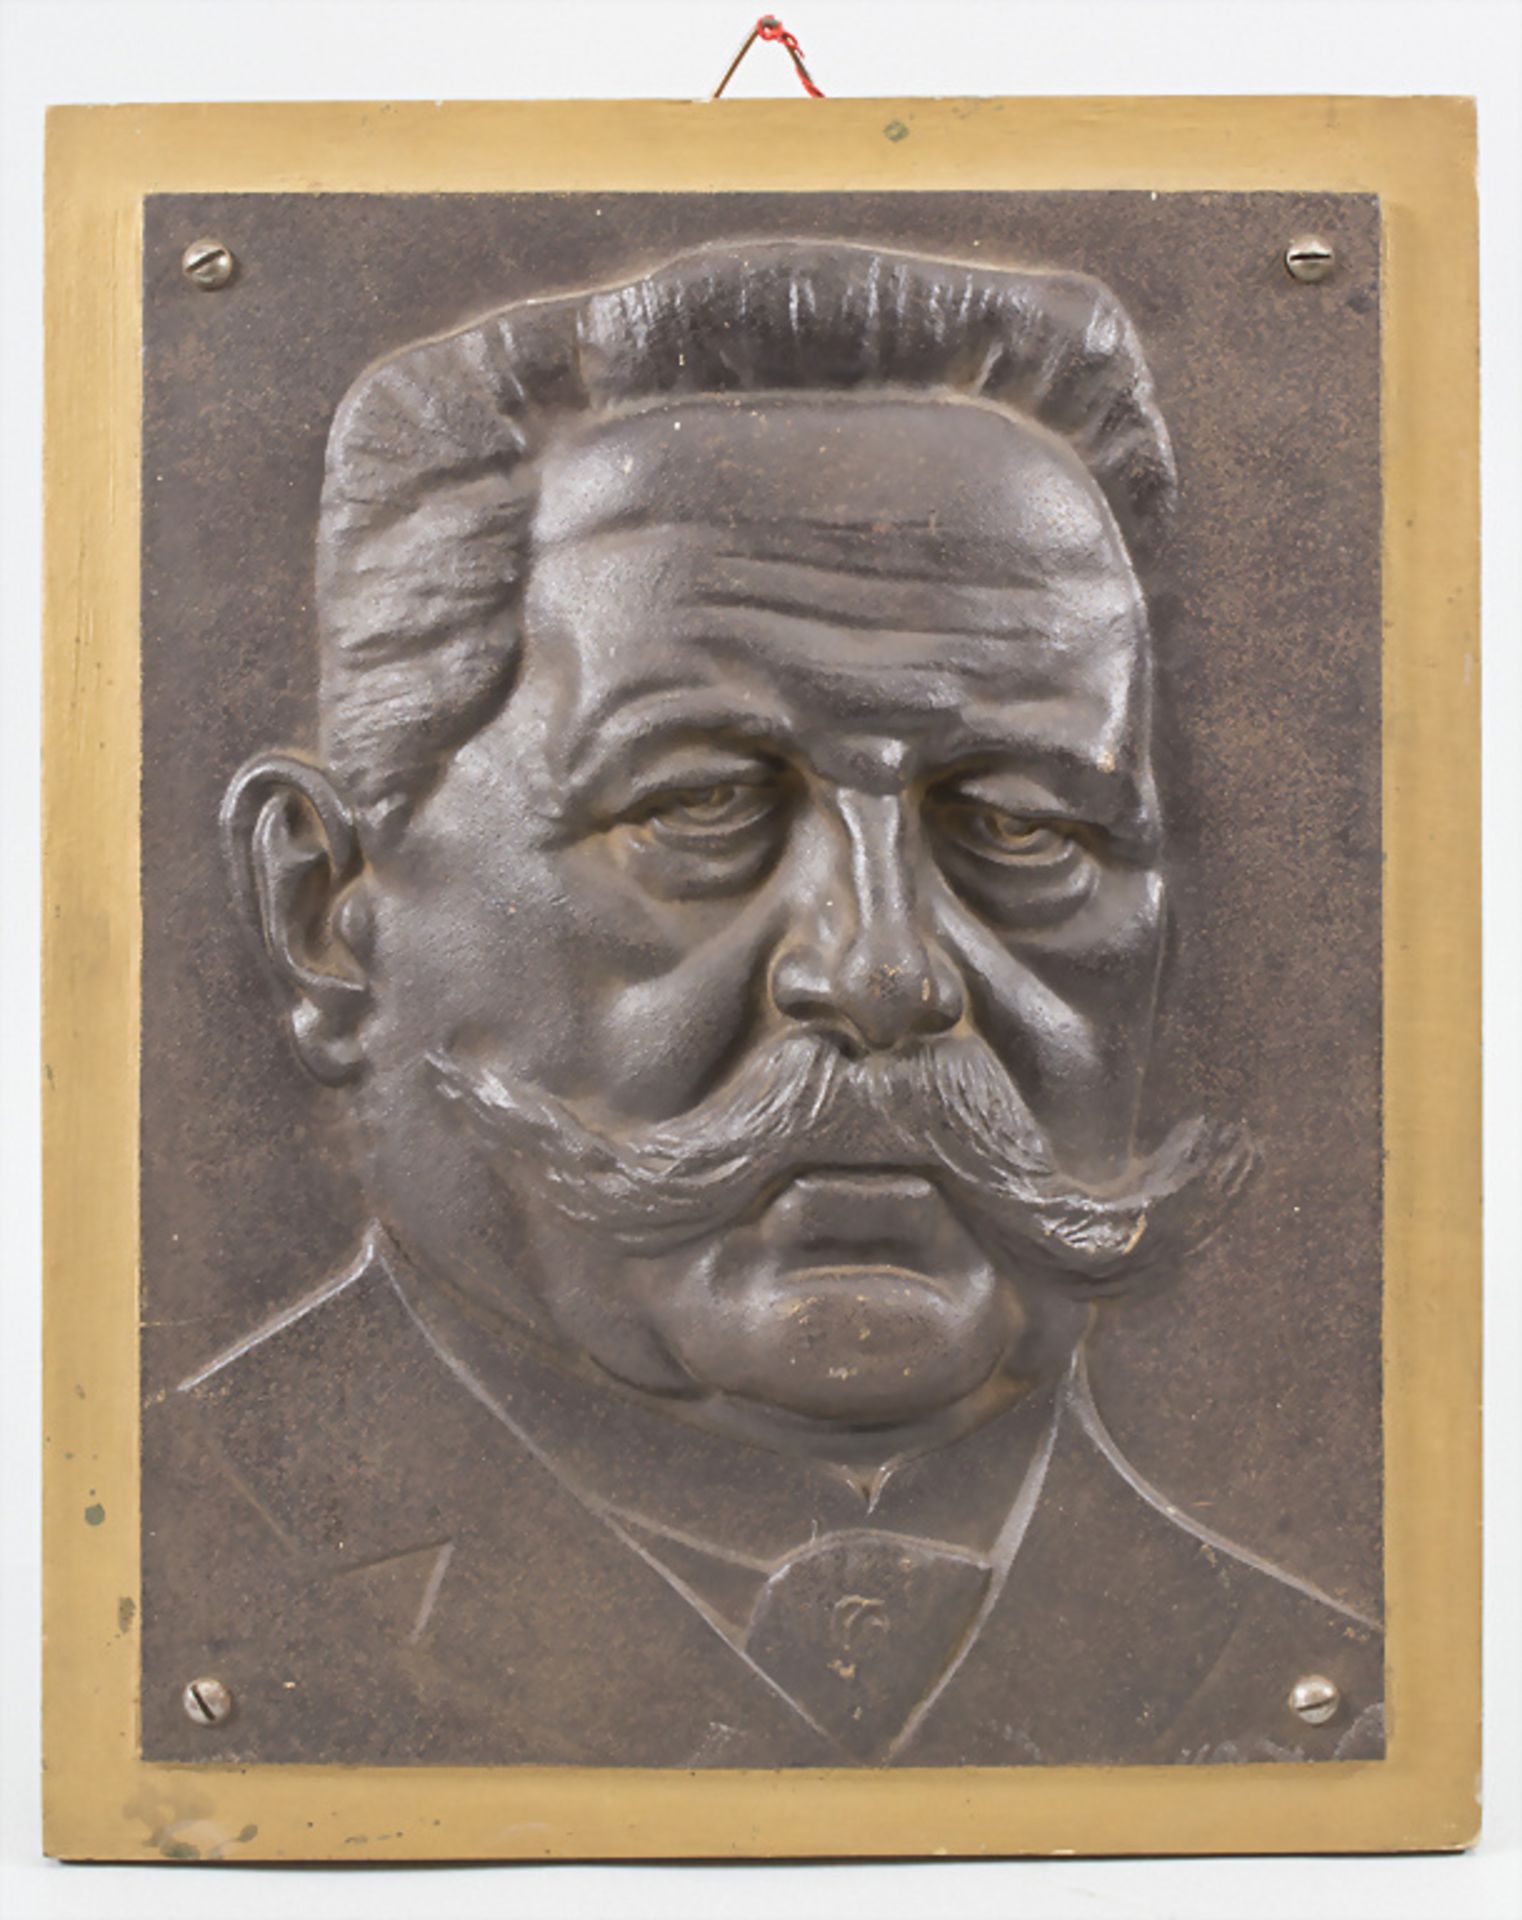 Eisenguss Reliefplatte 'Hindenburg' / A cast iron relief plate 'Hindenburg', um 1930 - Image 2 of 4